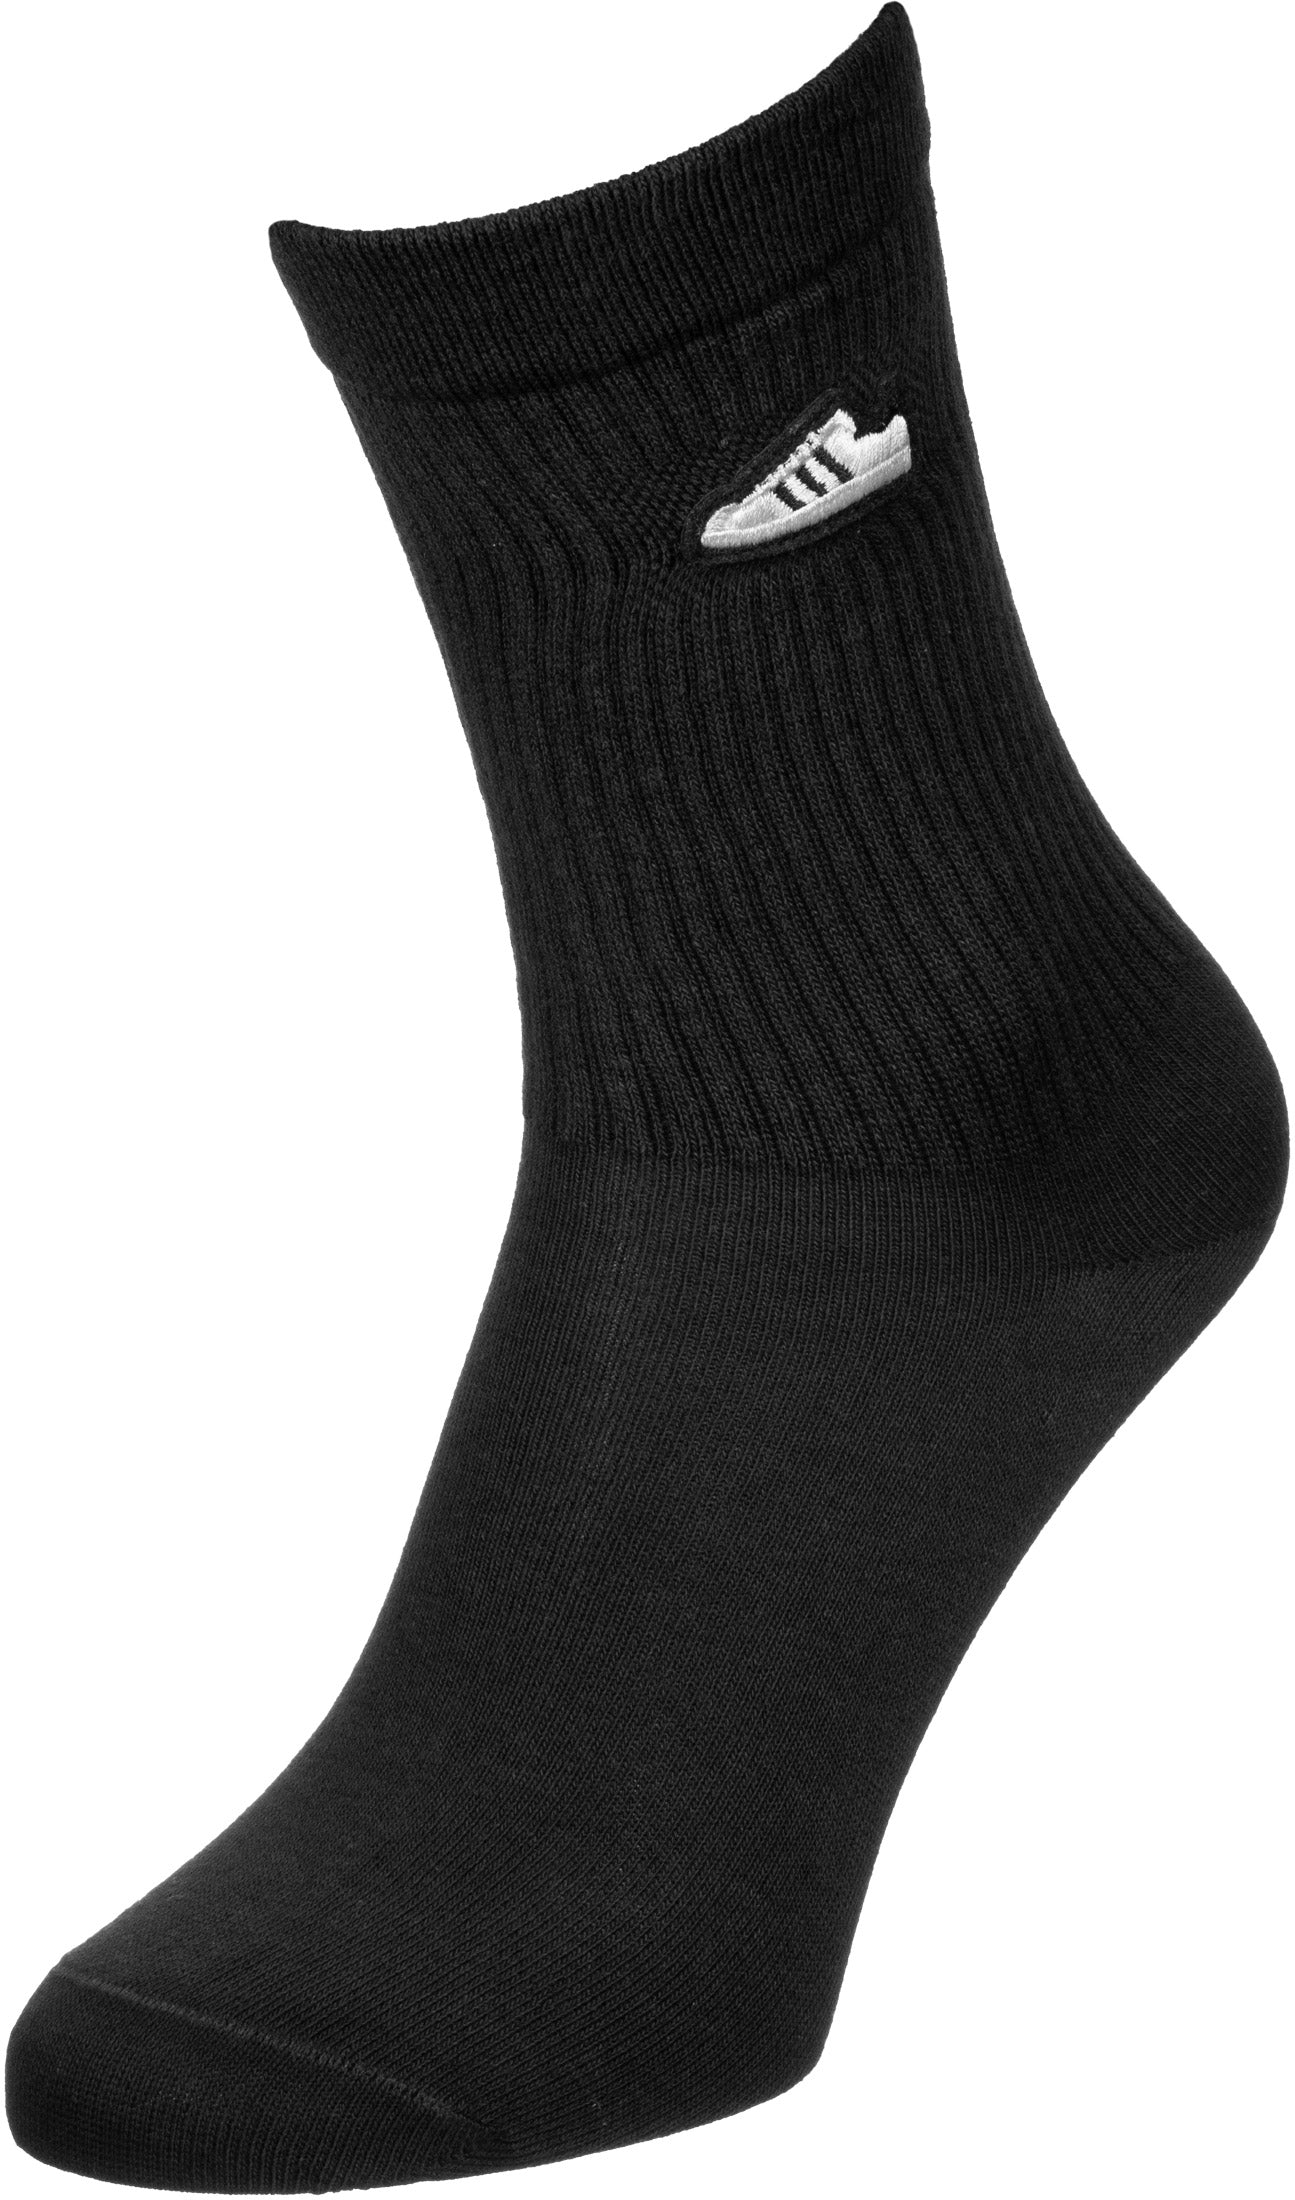 Adidas Super Socks Black